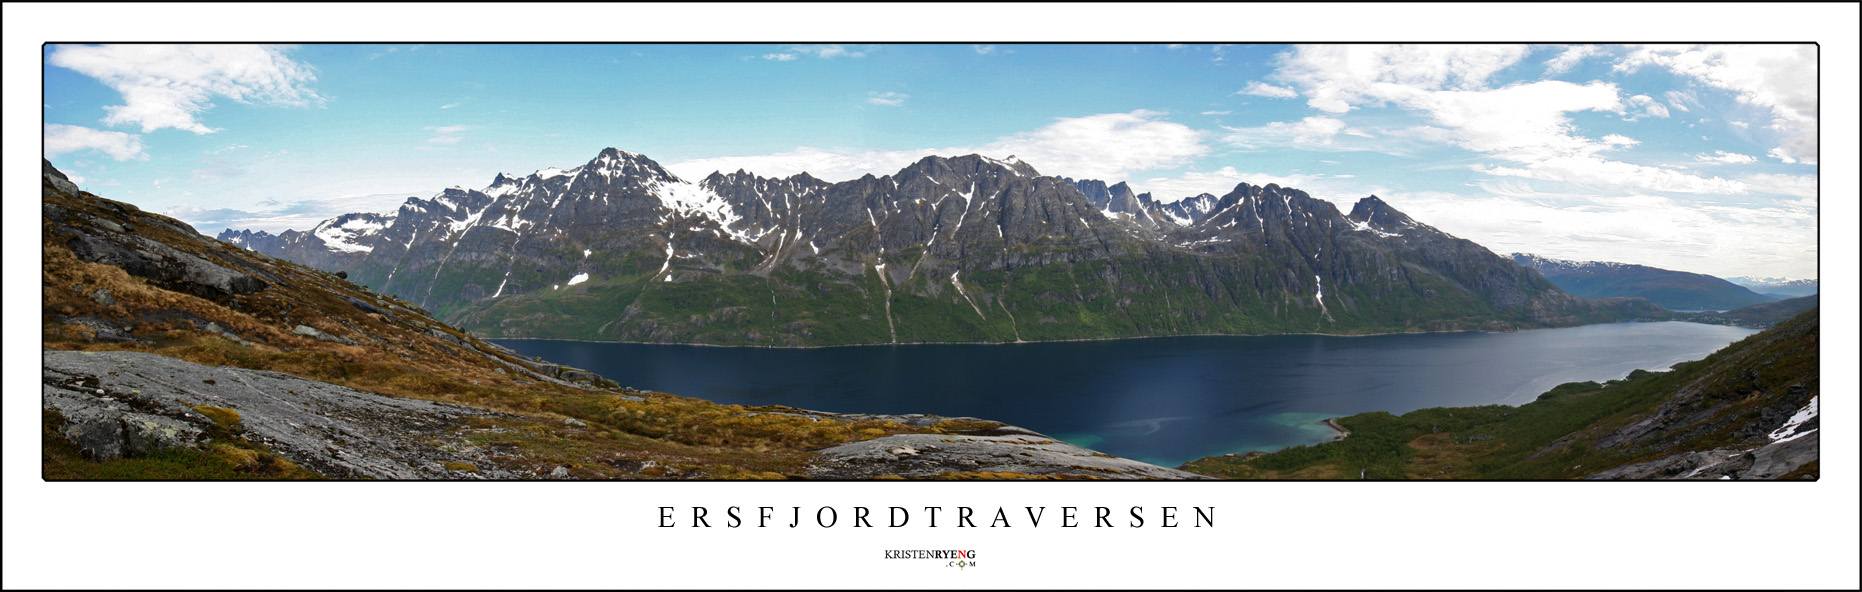 ErsfjordTraversenPanorama1.jpg - Utsikt mot Ersfjorden med den kjente Ersfjordtraversen i bakgrunnen. Sett fra Storsteindalen på vei opp mot Vinterhamntinden på Kvaløya. (Juni 2010)